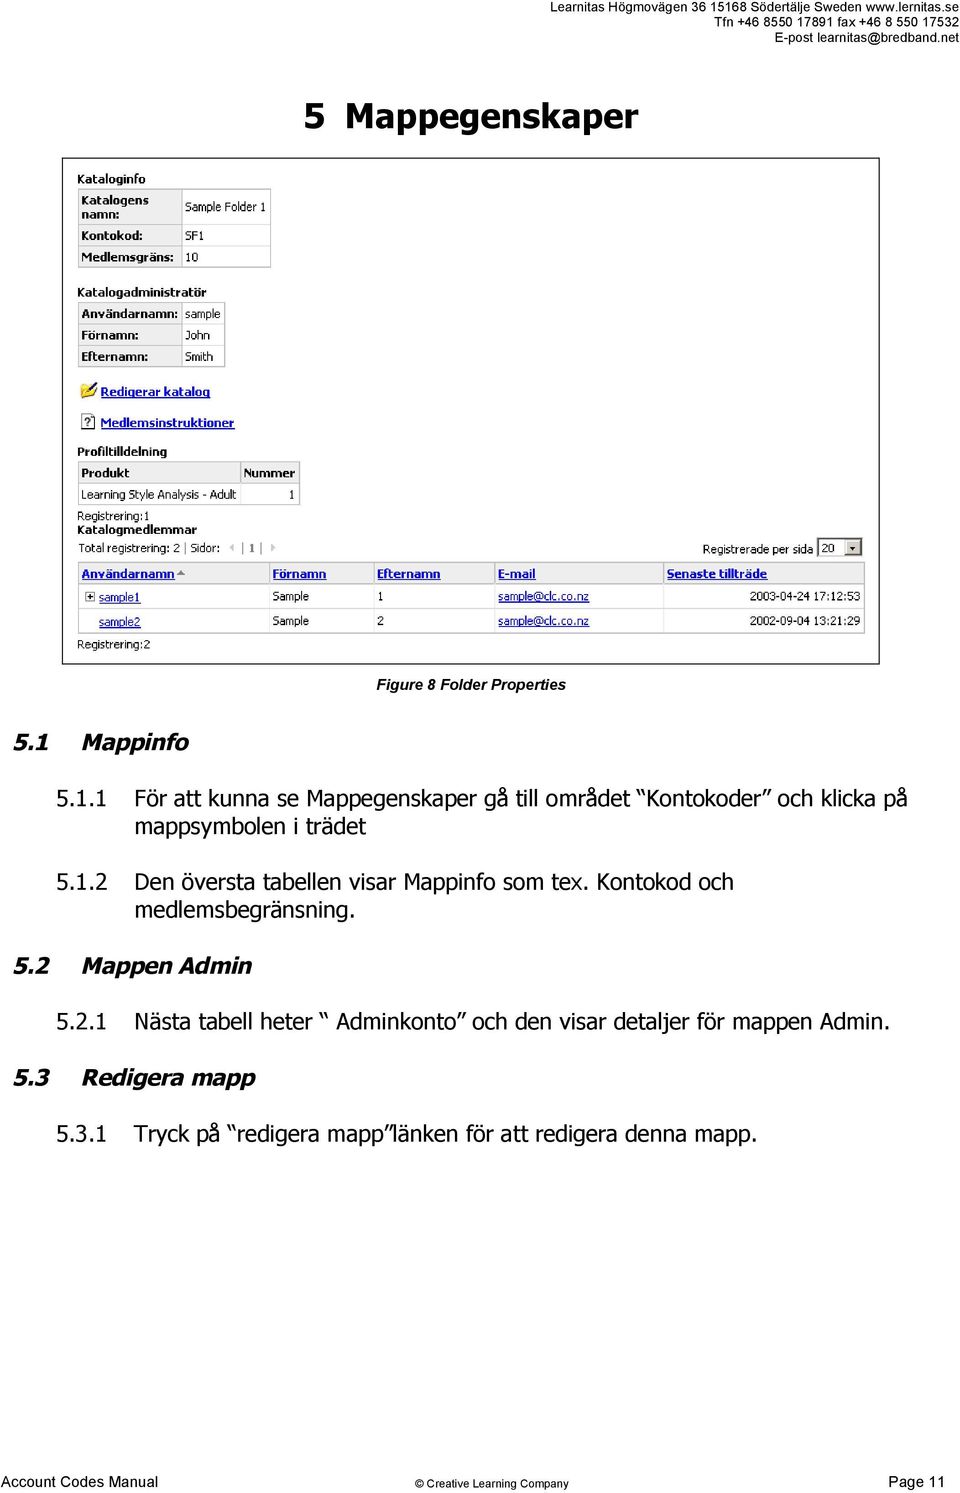 1.2 Den översta tabellen visar Mappinfo som tex. Kontokod och medlemsbegränsning. 5.2 Mappen Admin 5.2.1 Nästa tabell heter Adminkonto och den visar detaljer för mappen Admin.